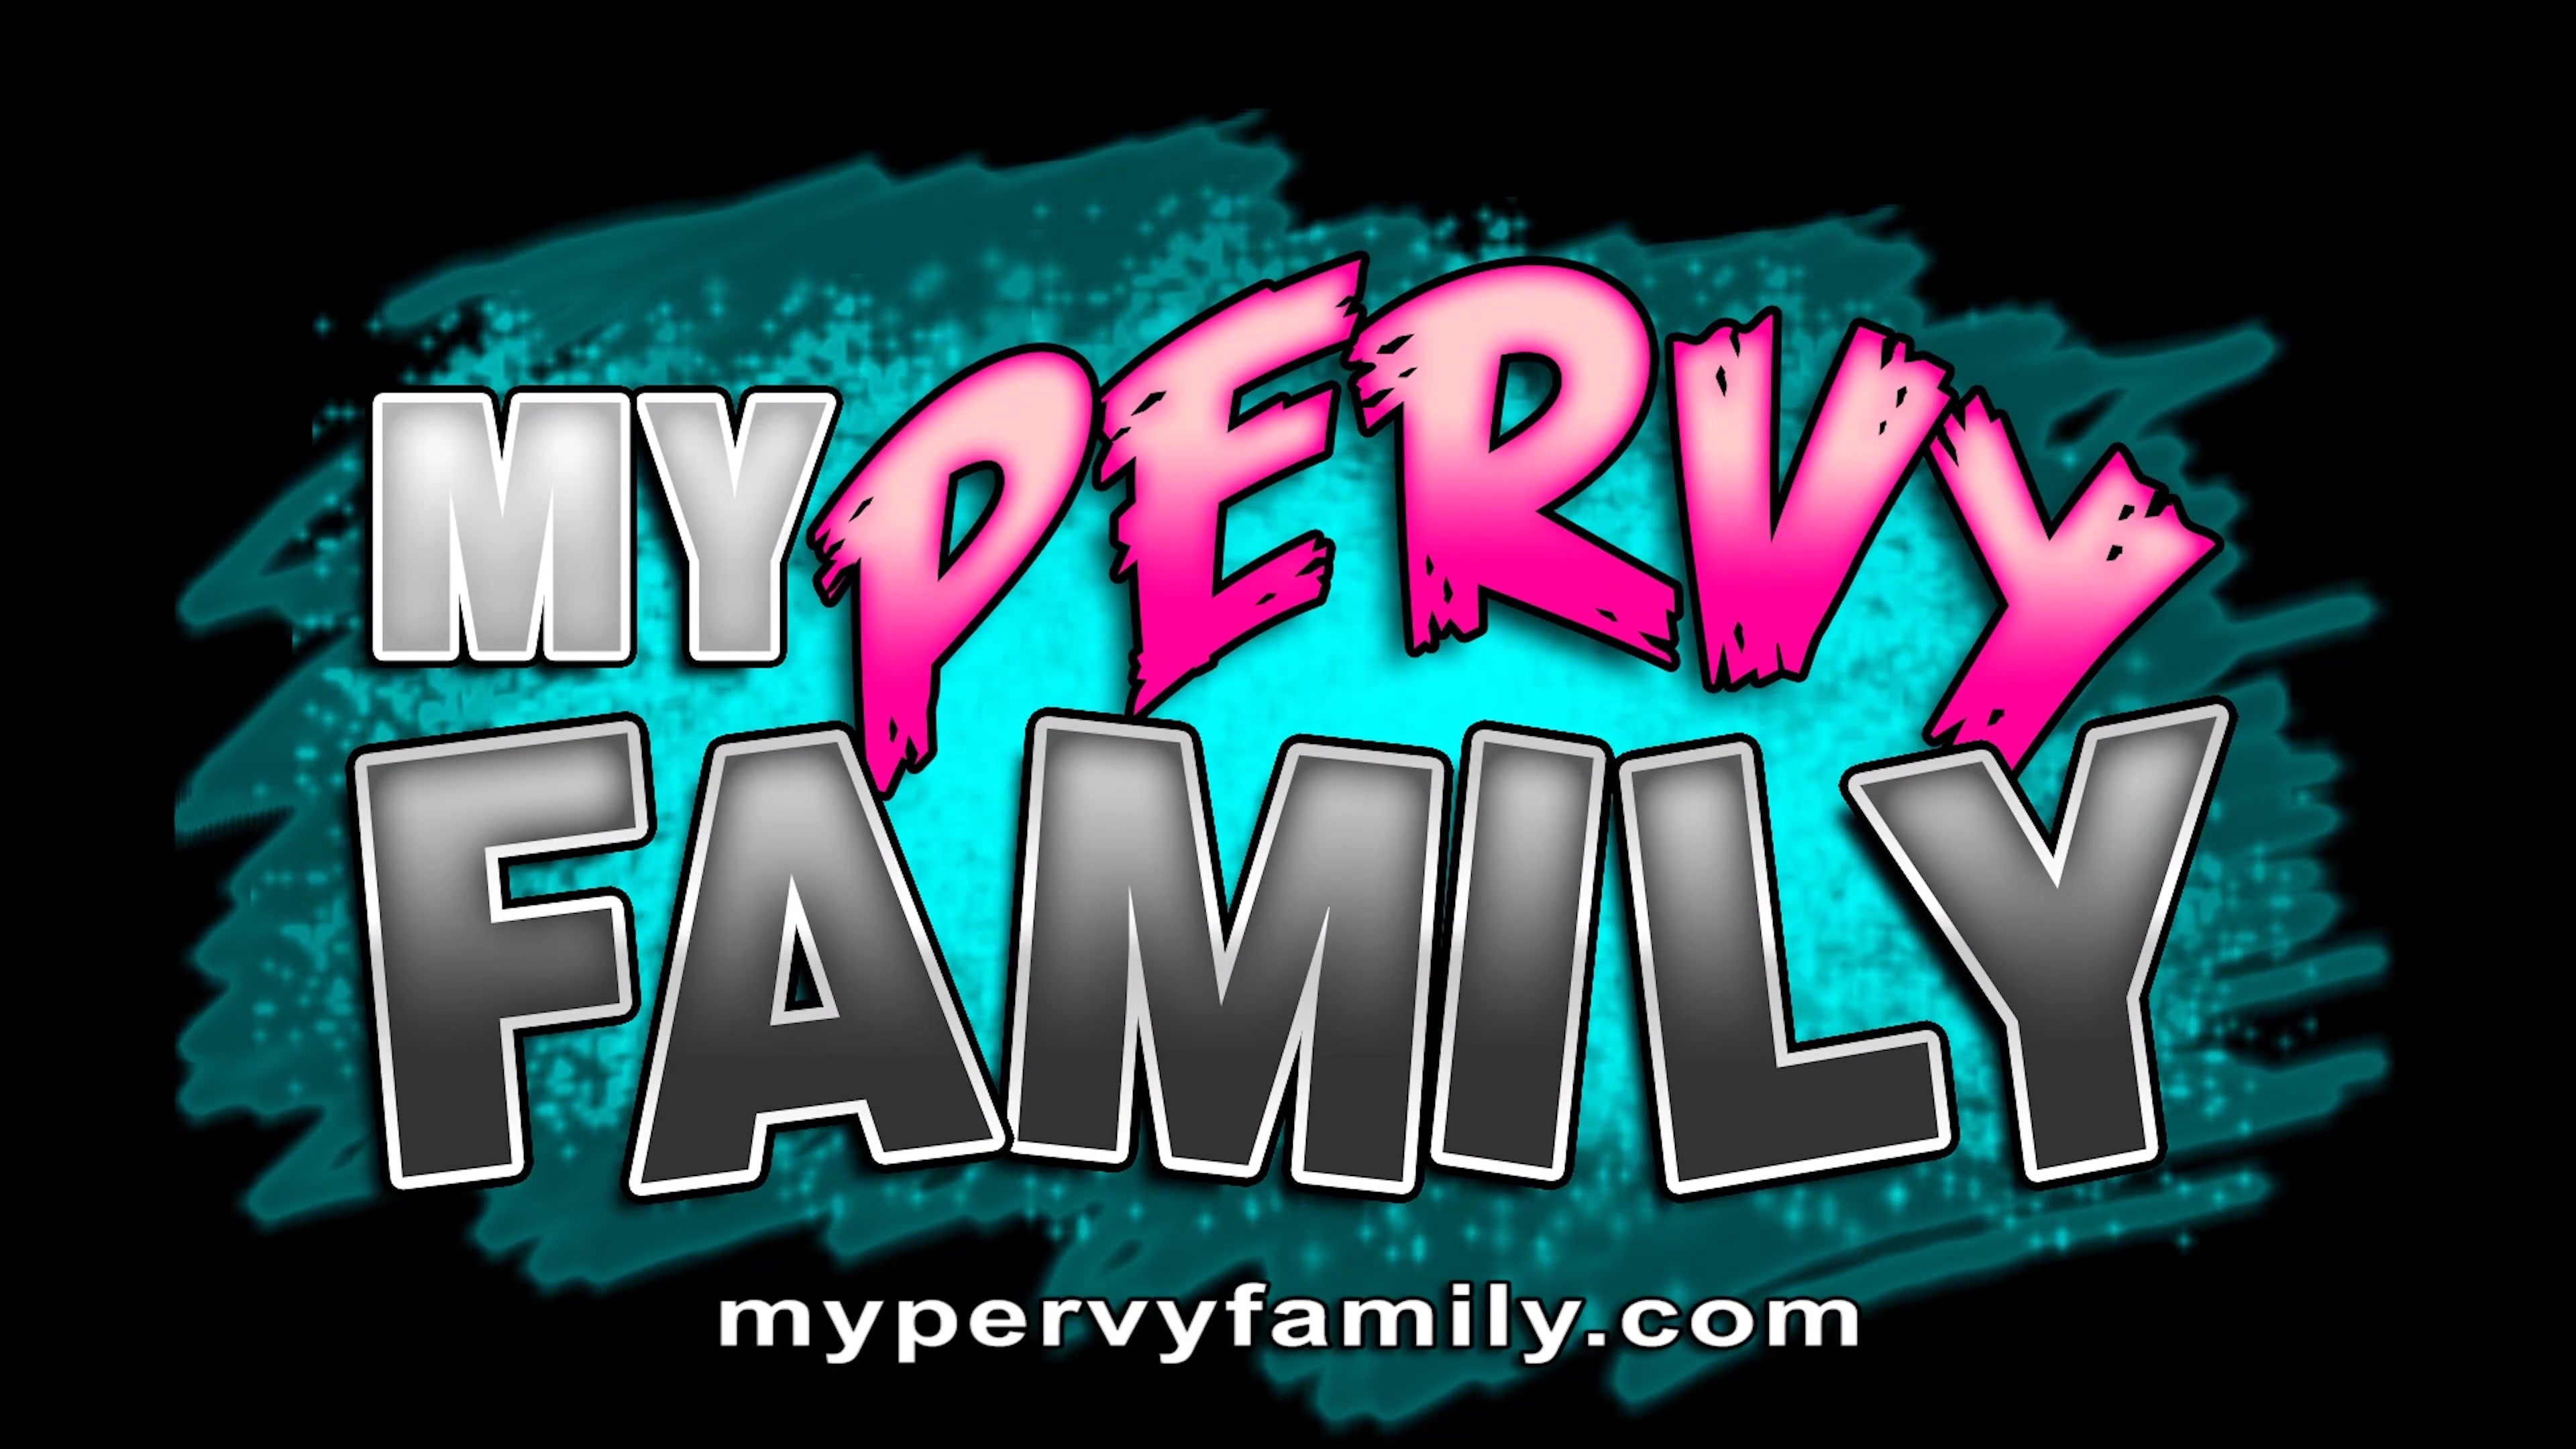 Mypervyfamily.com